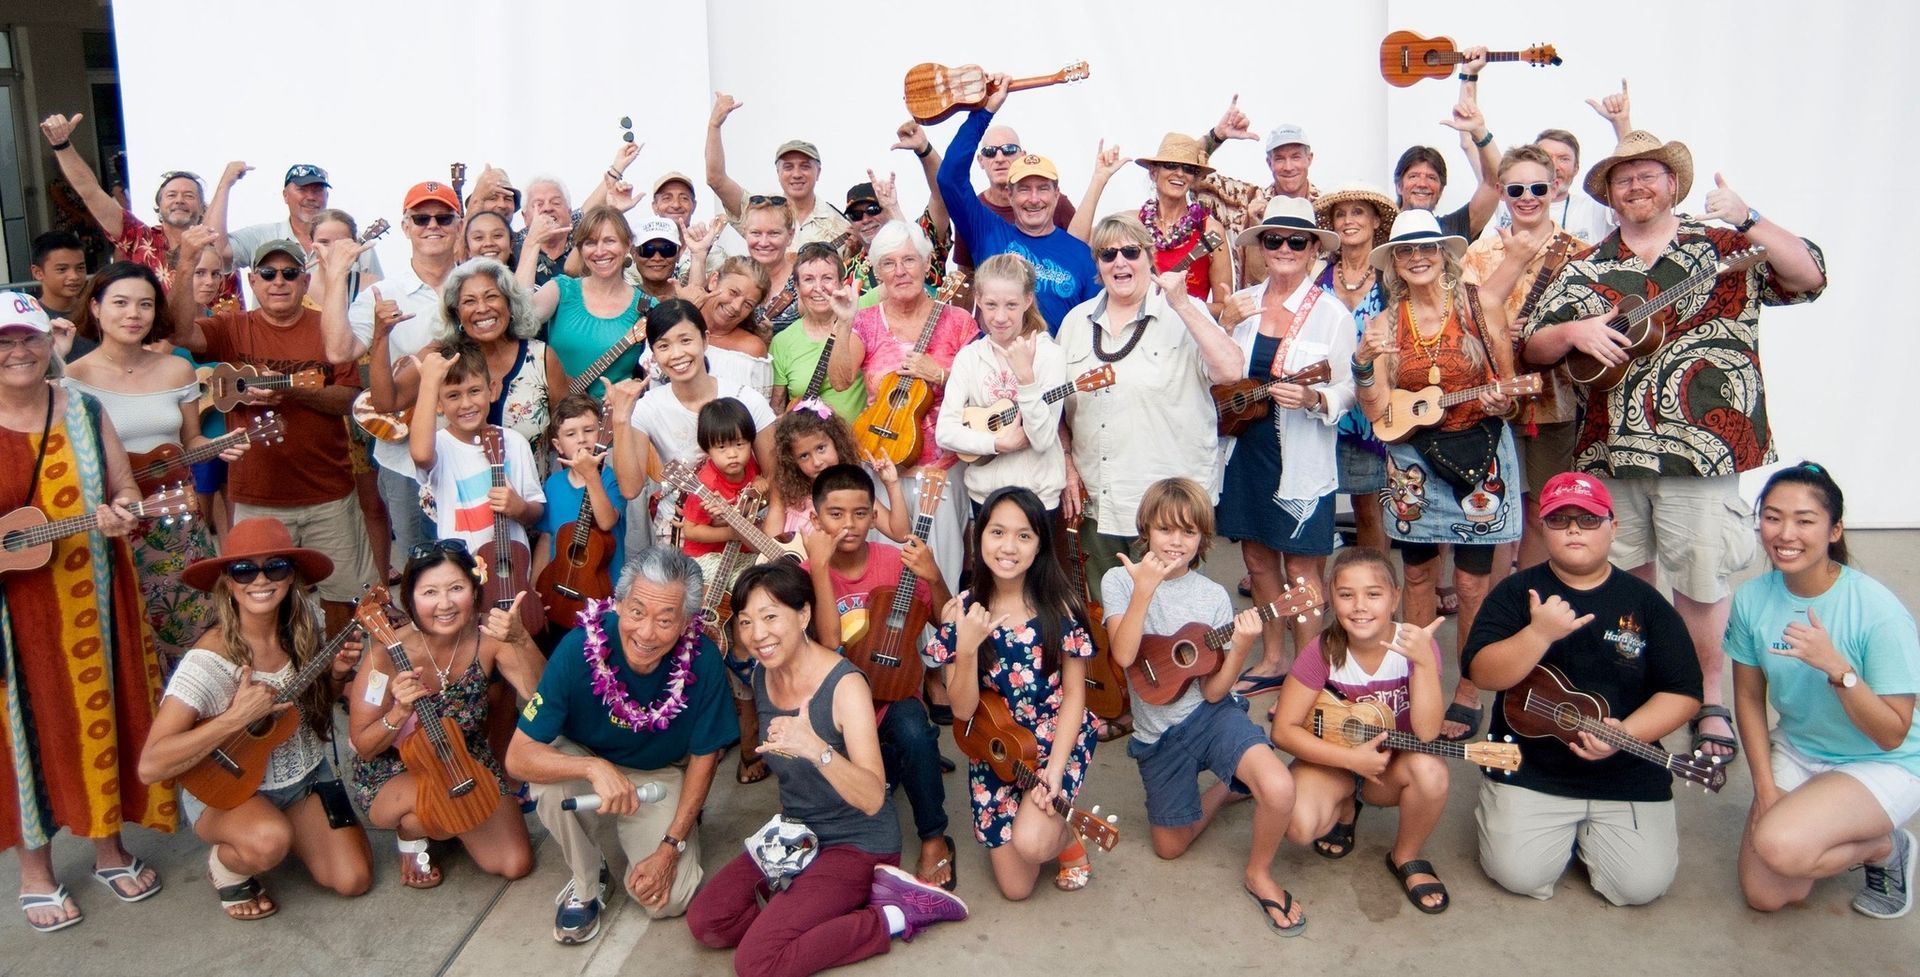 World’s Largest Ukulele Festival, world record in Waikiki, Hawaii
